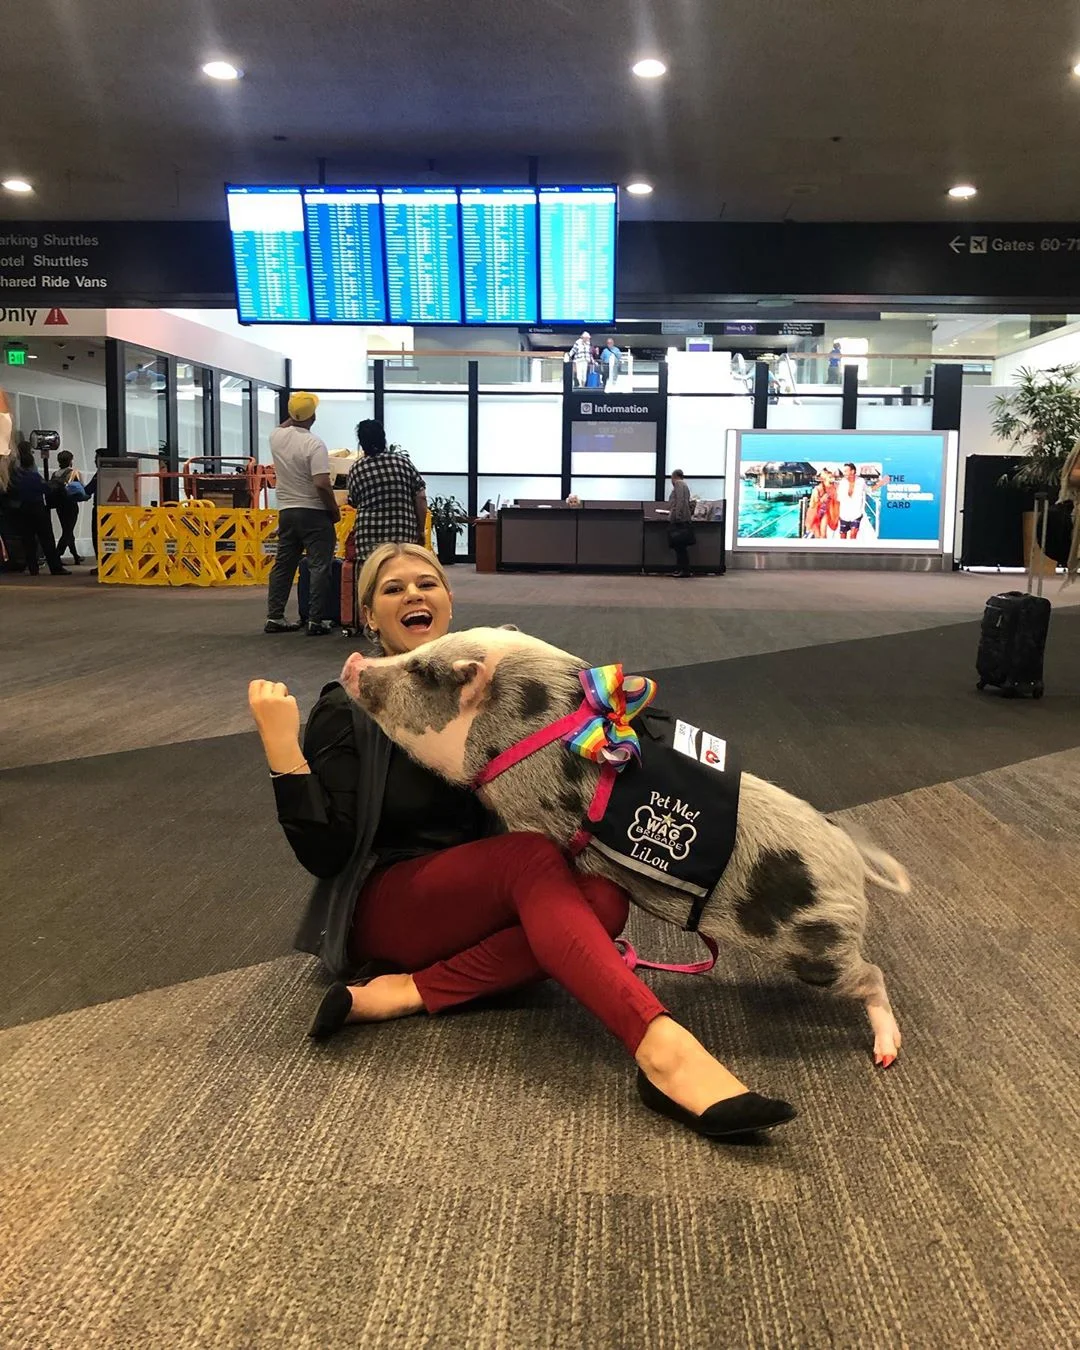 В аэропорту Сан-Франциско теперь работает свинья, которая мгновенно стала звездой - фото 458335